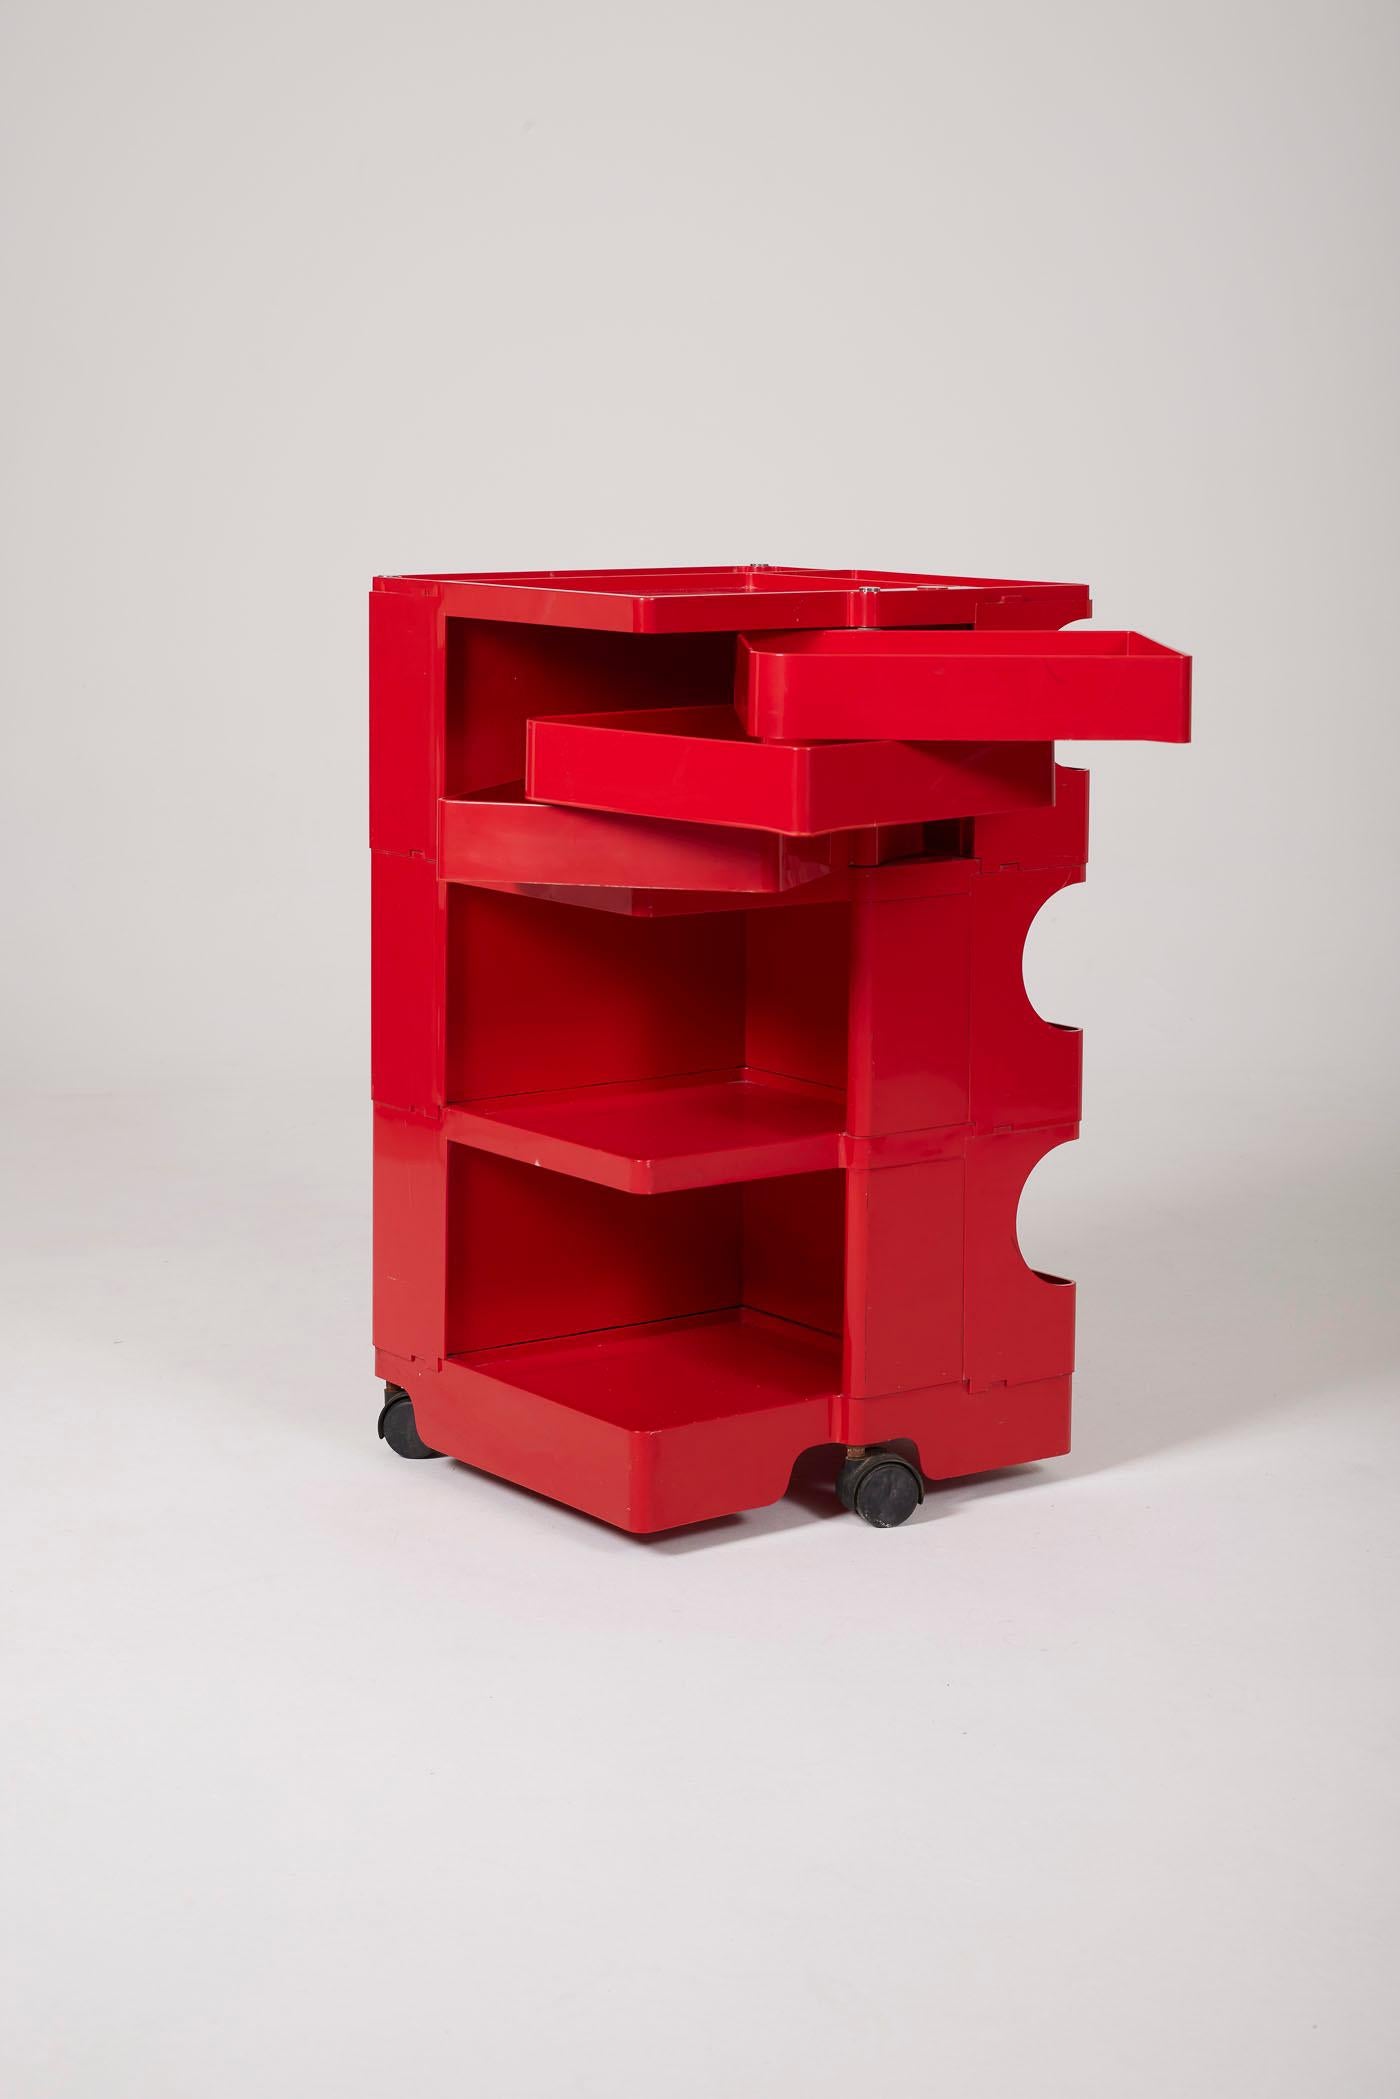 Chariot Boby rouge du designer italien Joe Colombo, années 1970. Fabriqué en résine ABS moulée, ce chariot est modulable et se compose de 3 tiroirs amovibles montés sur roulettes. Il est signé dans le matériel. Quelques légères traces d'usure à